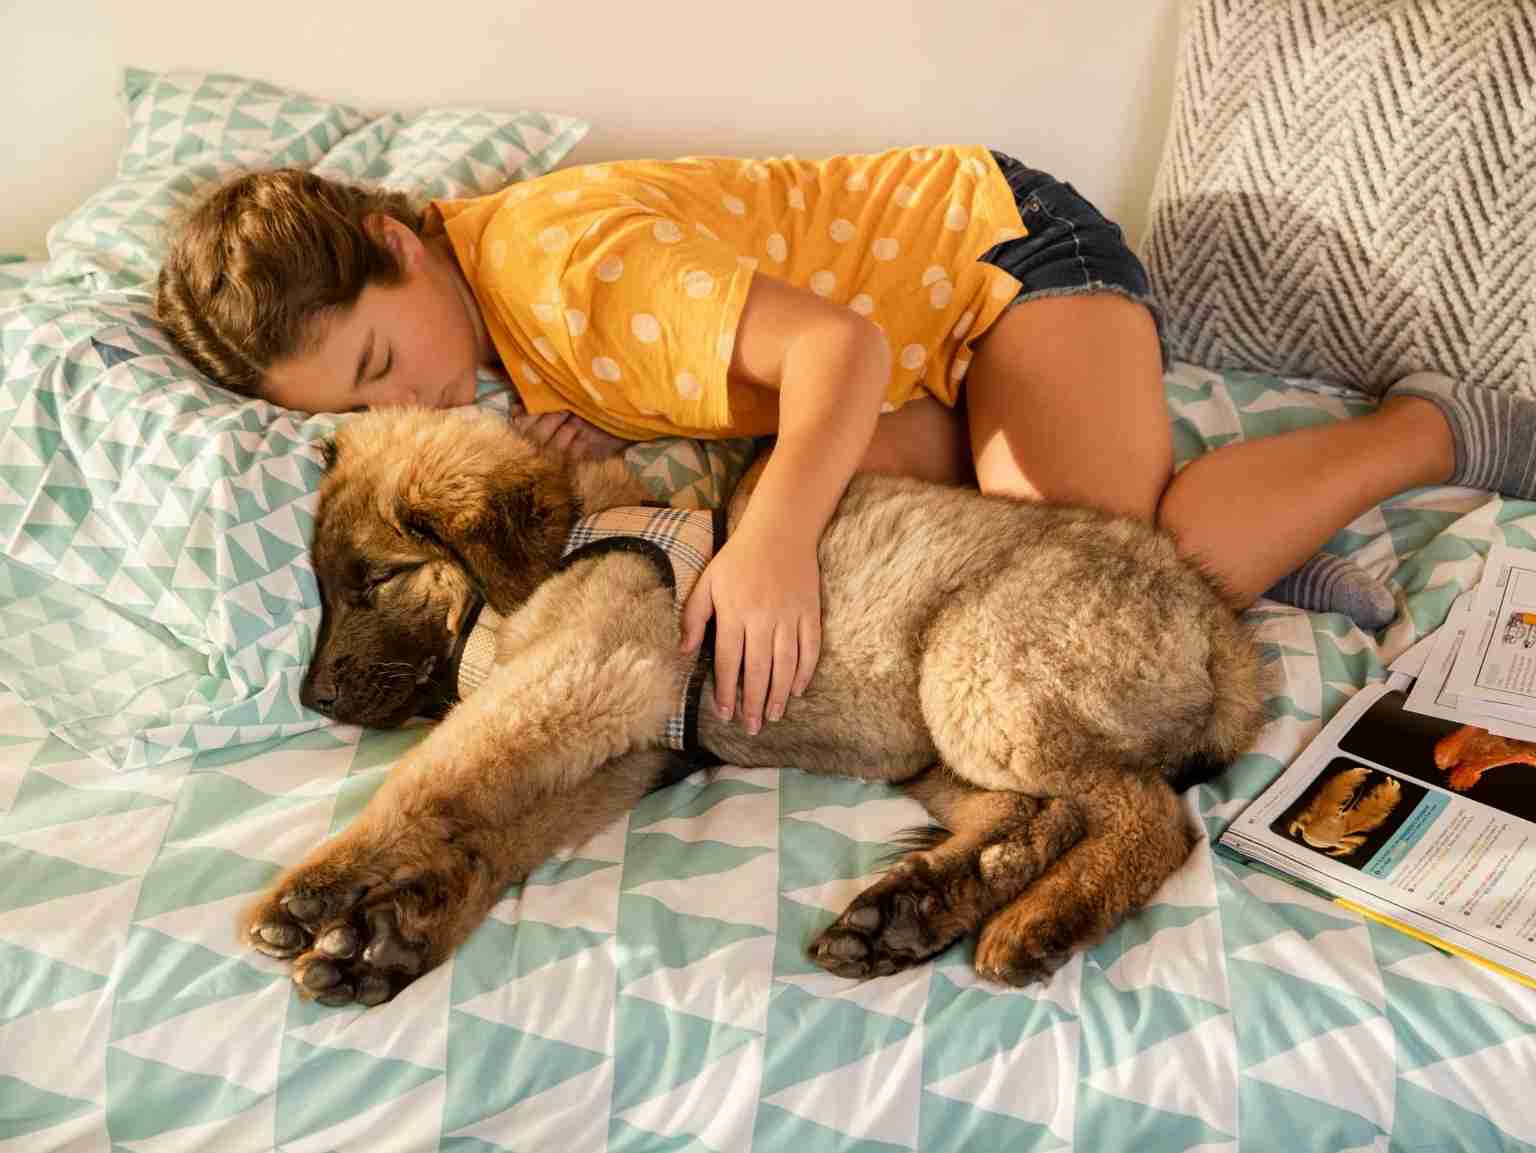 Una niña durmiendo junto a su cachorro